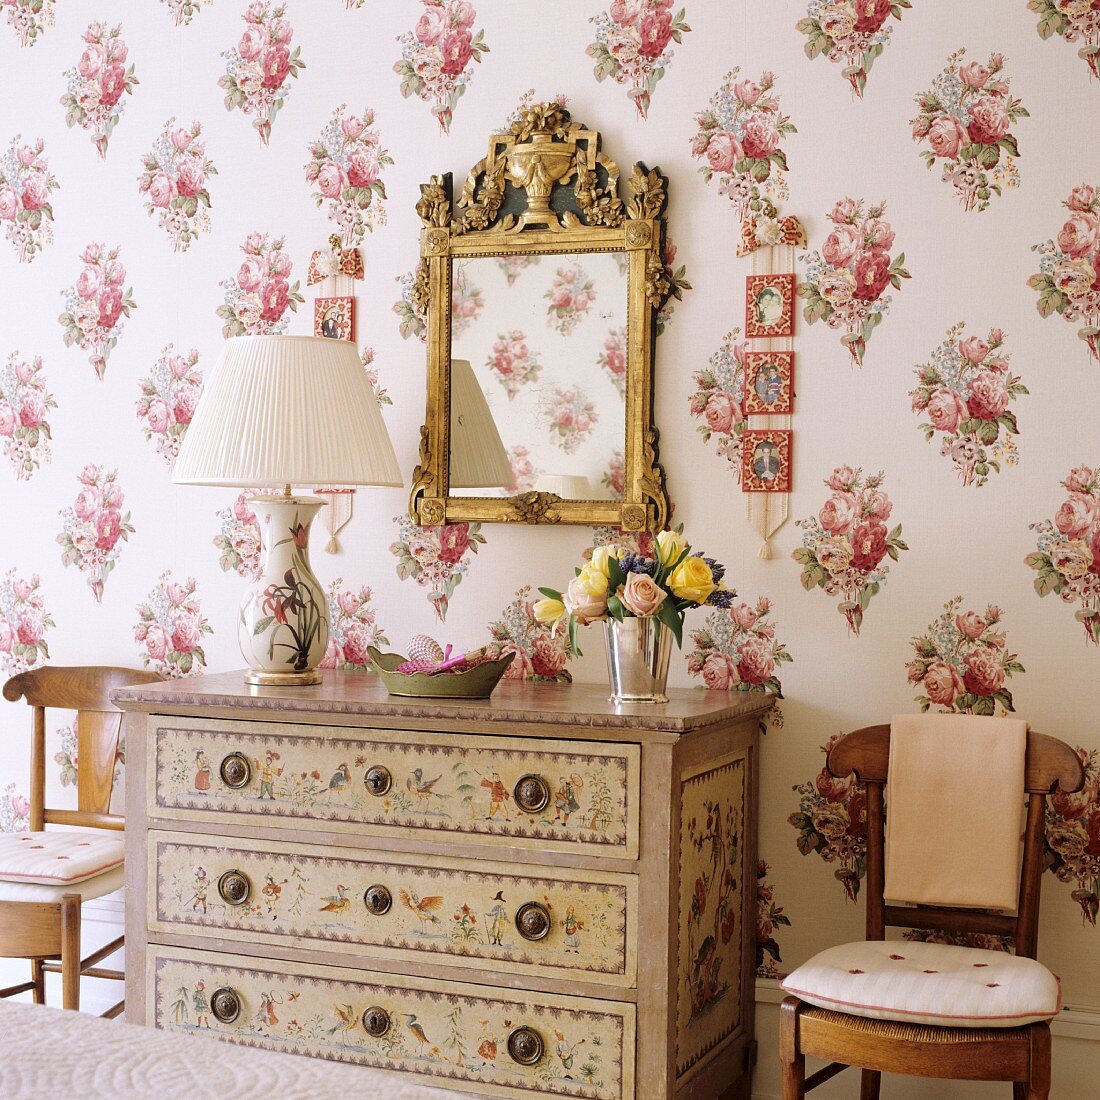 Tischleuchte mit Plisseestoffschirm auf bemalter Kommode vor Spiegel mit Goldrahmen an Wand mit Blumenmustern